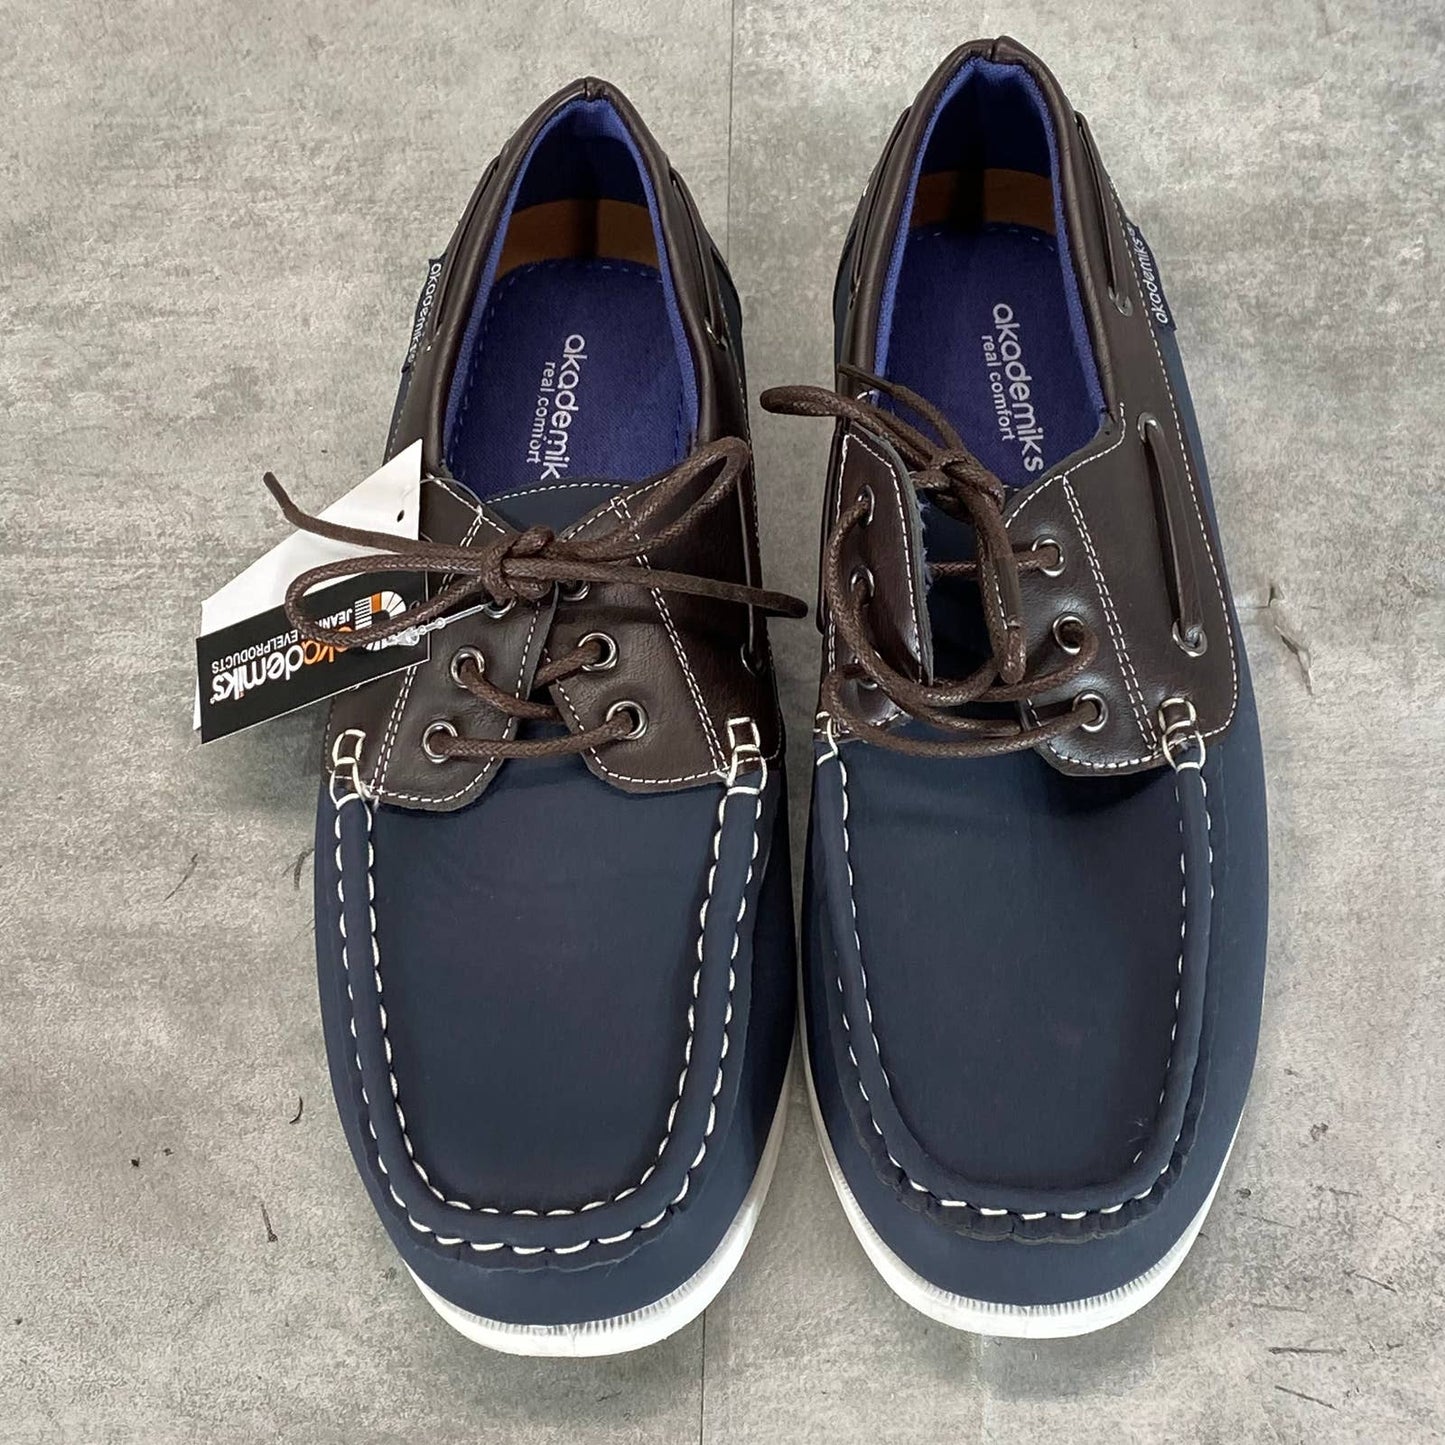 AKADEMIKS Men's Navy Marina Lace-Up Boat Shoes SZ 9